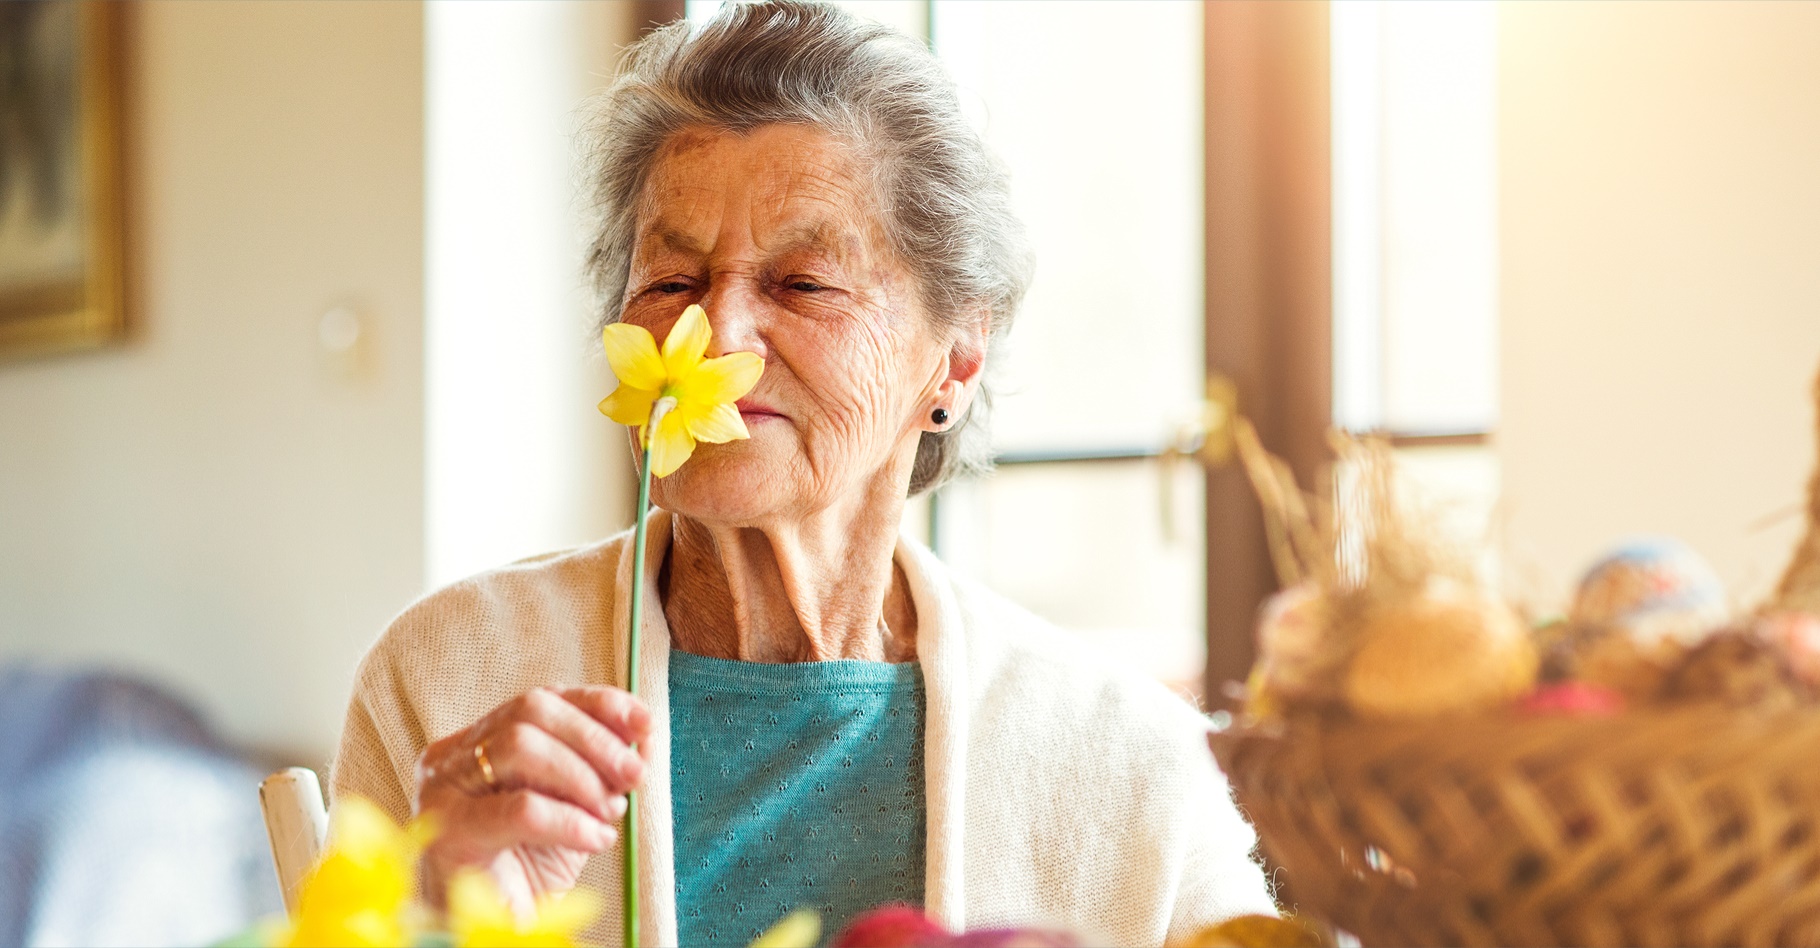  La perte d’odorat est un symptôme courant de la maladie d’Alzheimer. © Halfpoint, Shutterstock